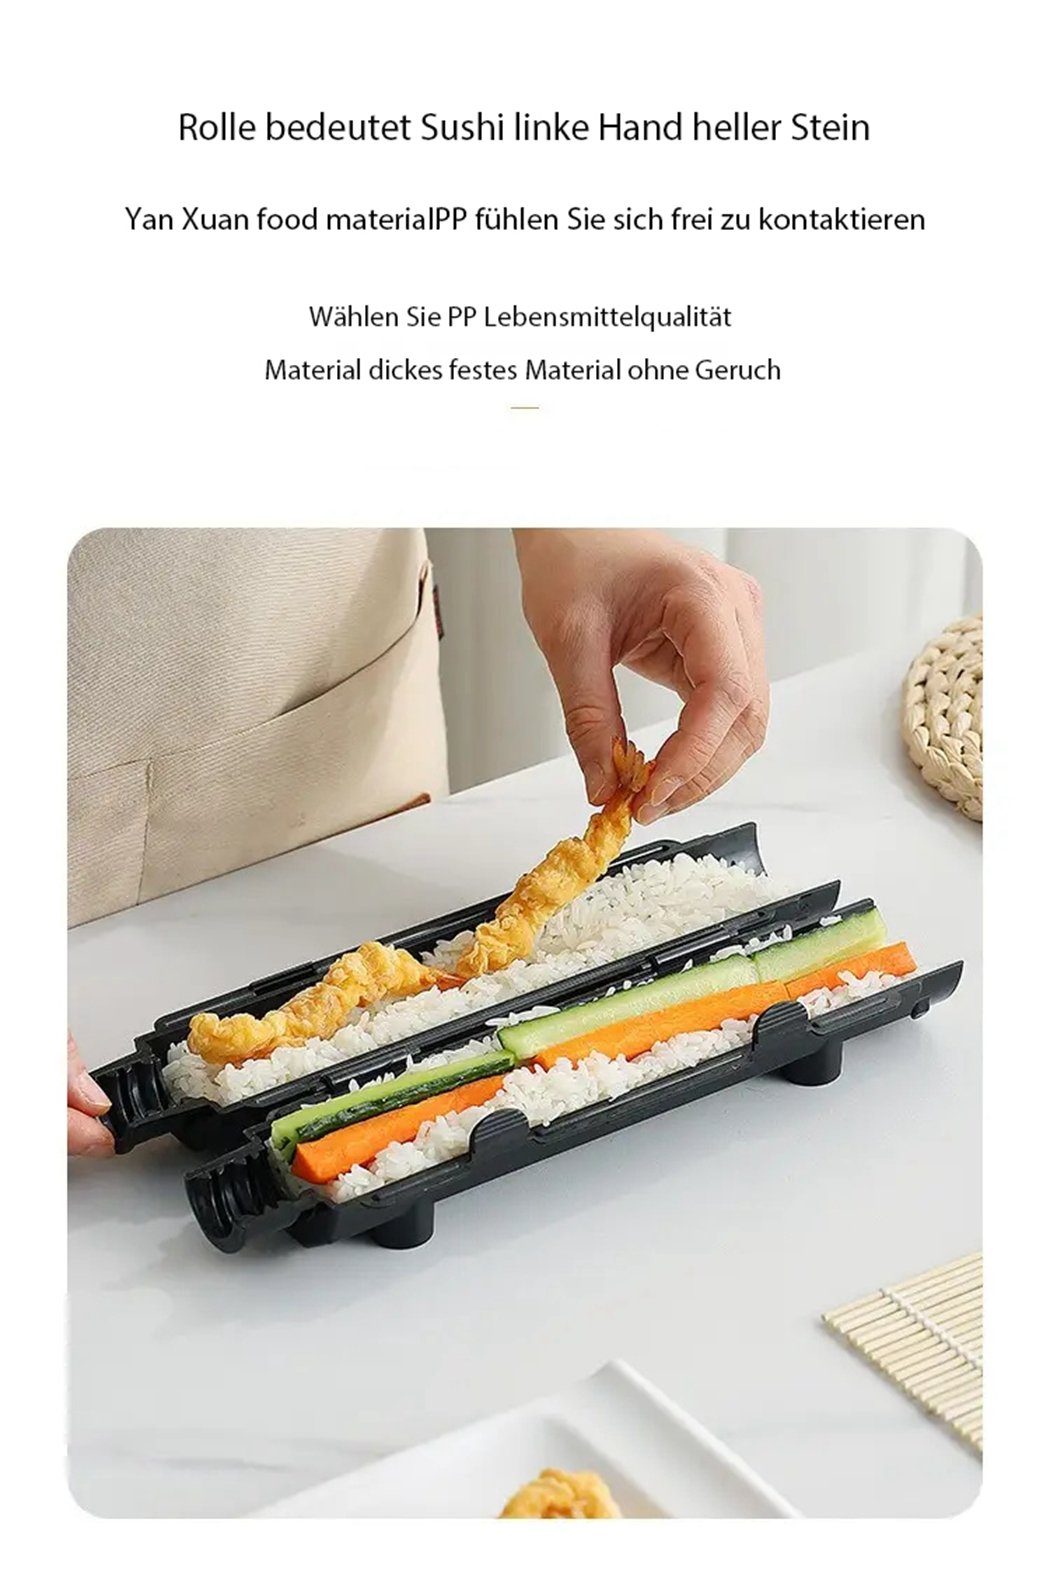 TUABUR Sushi-Roller Sushi-Panzerfaust, Sushi-Zubereitungsset, Anfänger für Weiß Sushi-Rollen